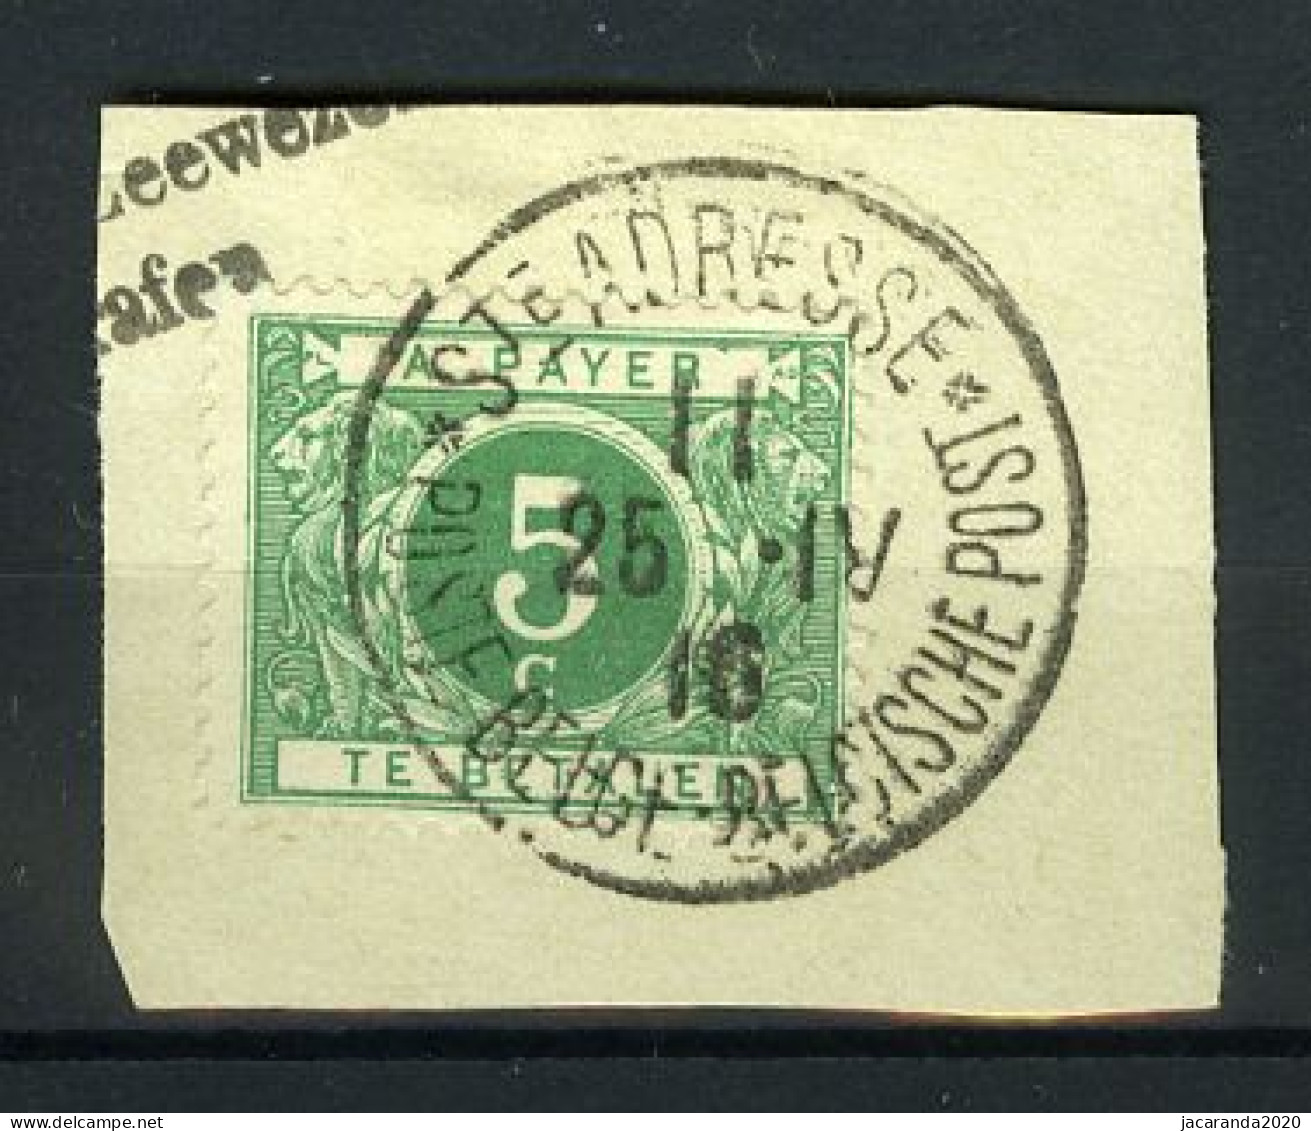 België TX 12 - Op Fragment - Stempel: St. Adresse - Stamps